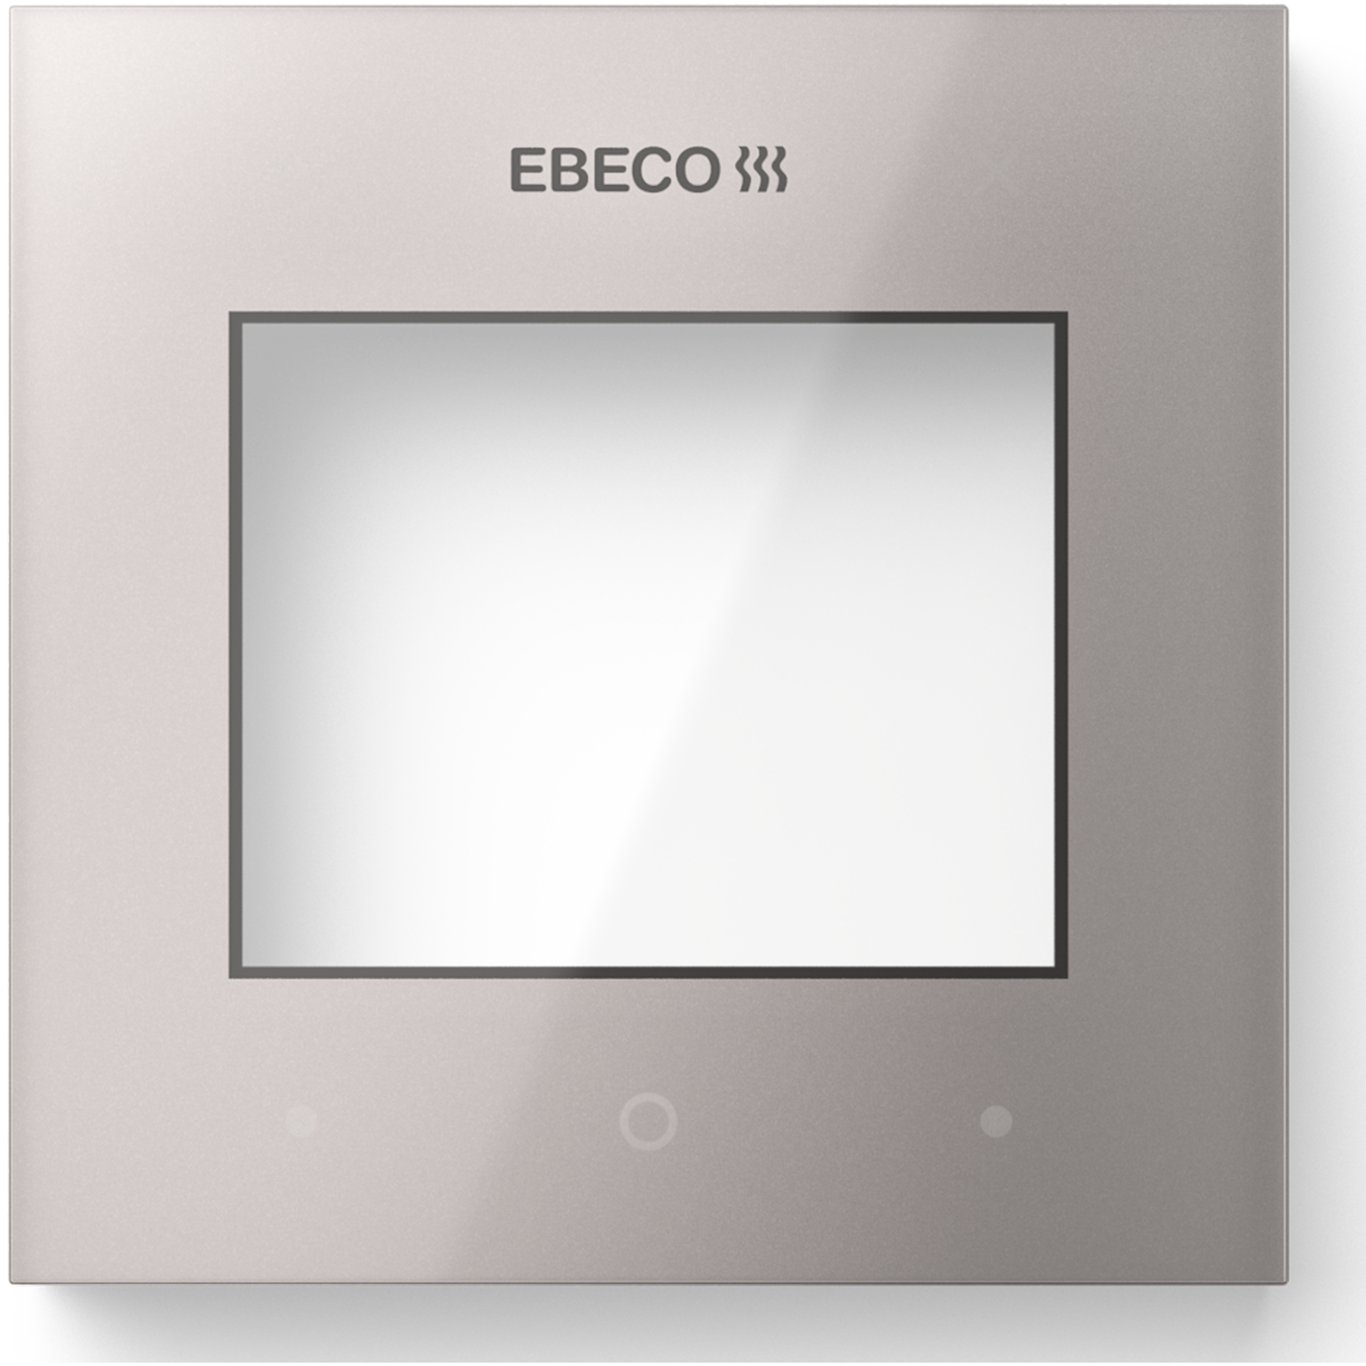 EBECO DEKKSKIVE FOR EB-THERM 500, METALLIC